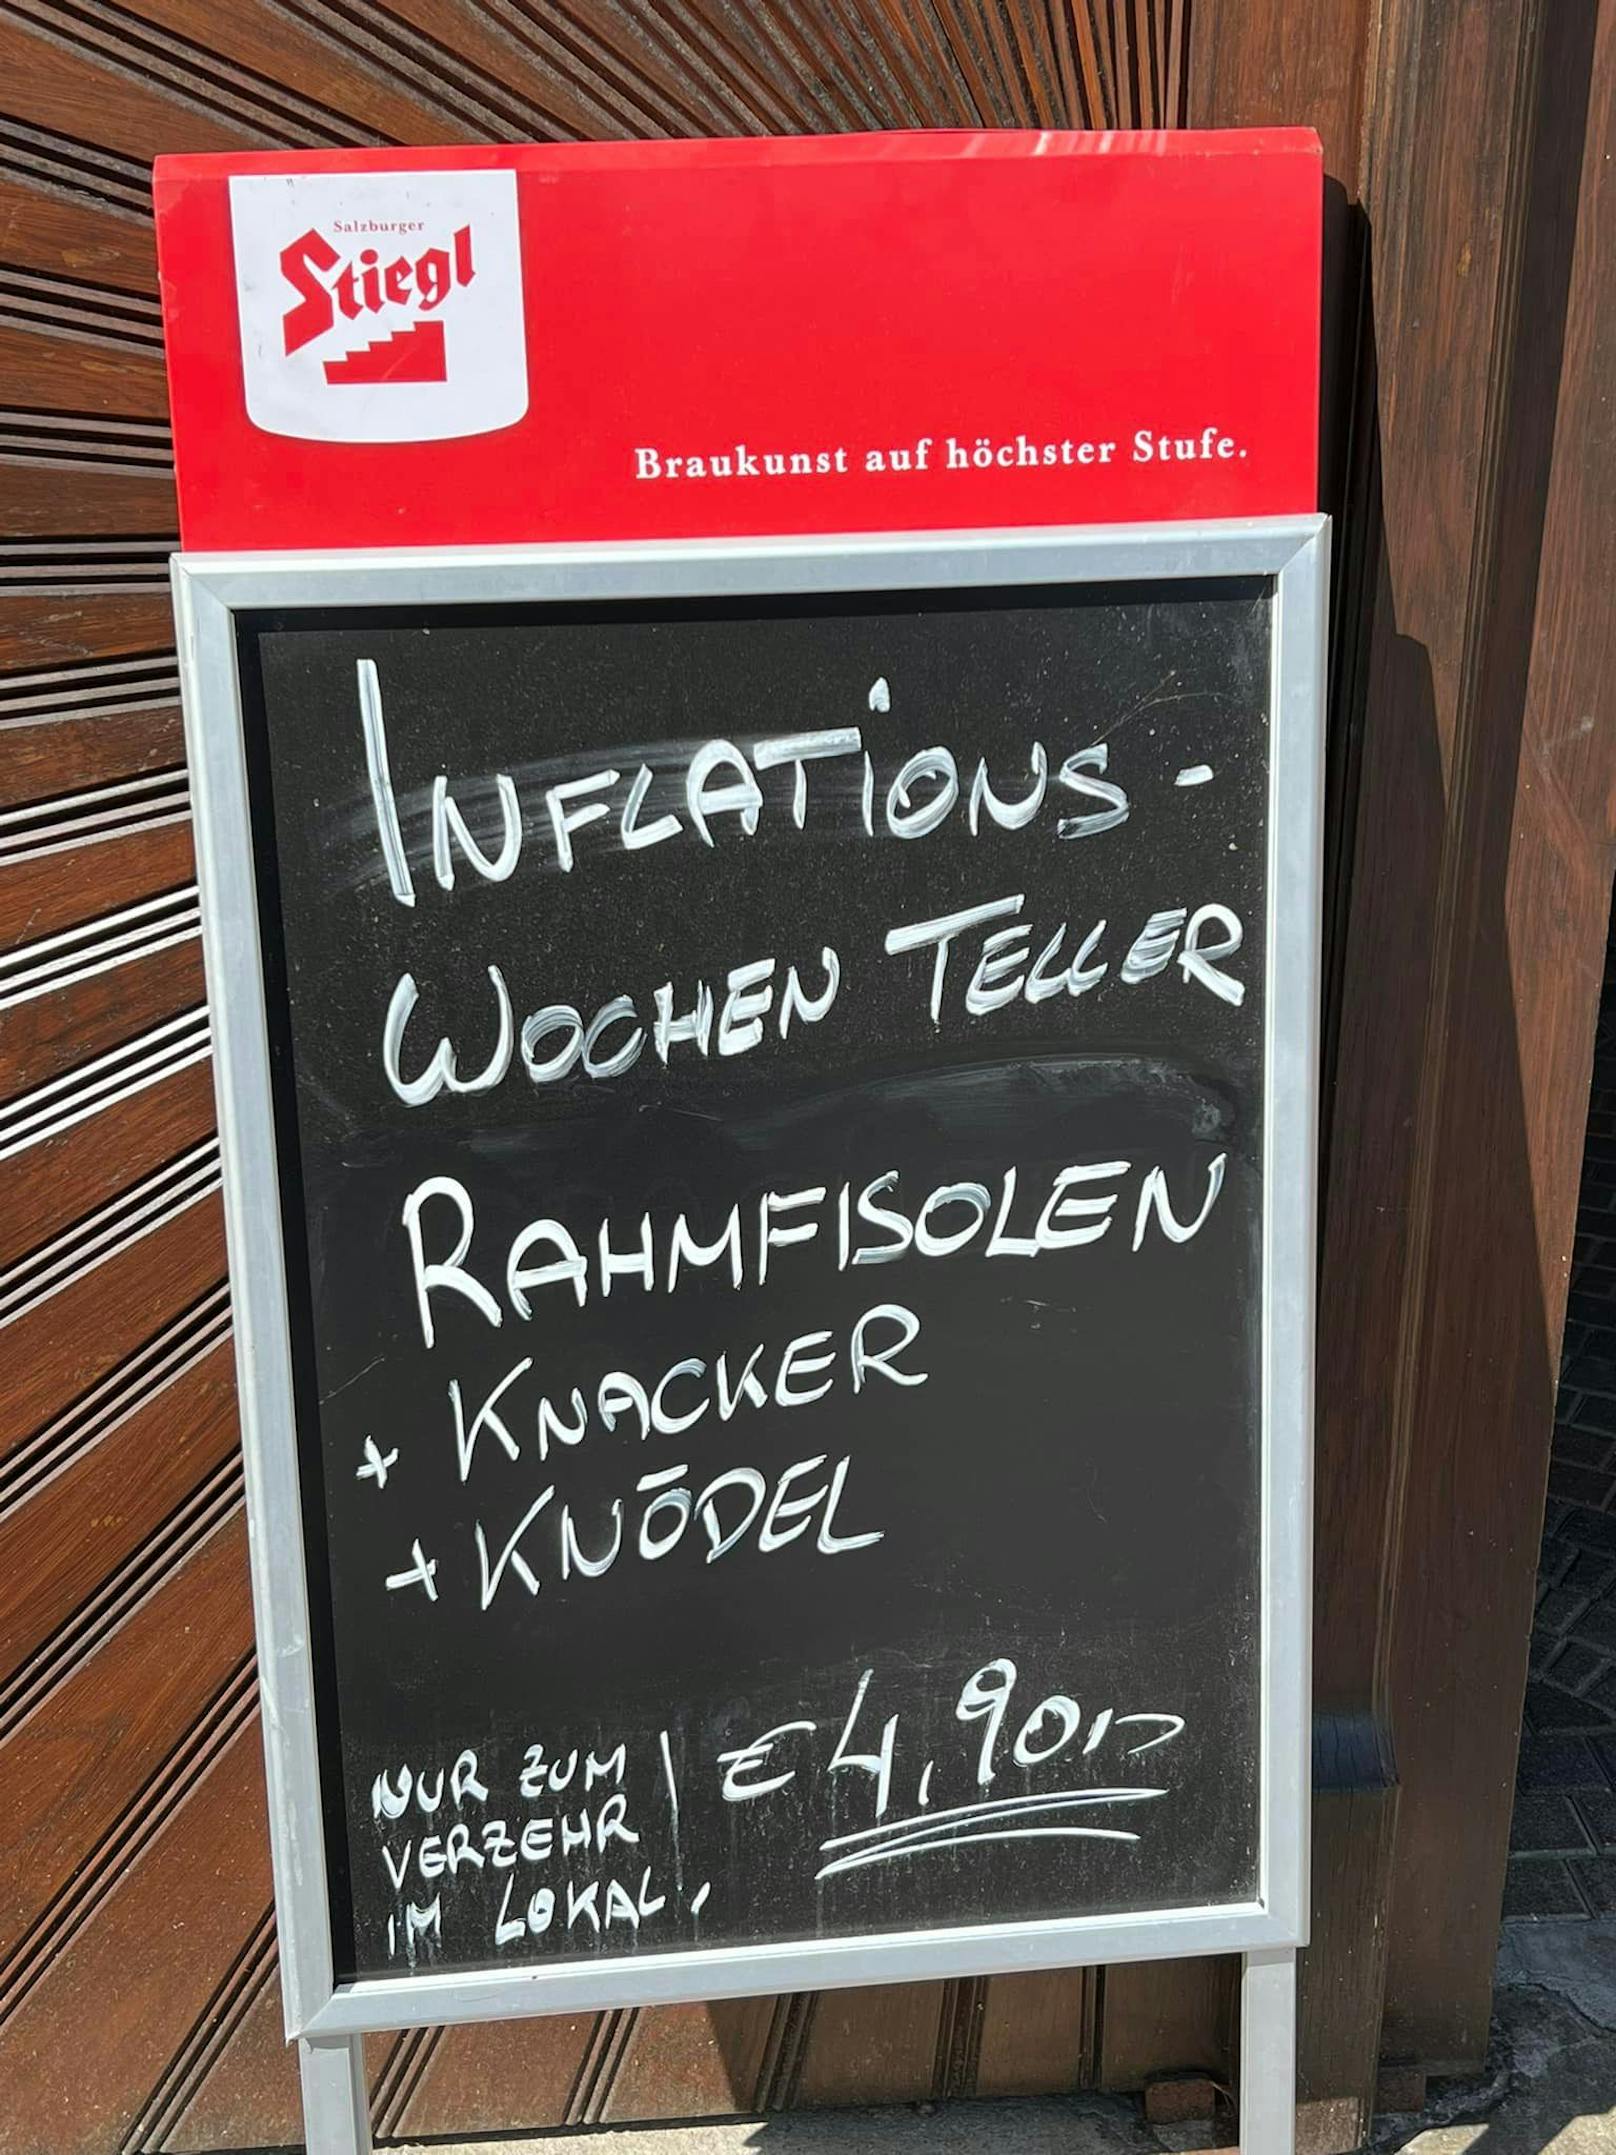 Der Gastronom Peter Wittmann bietet den Inflationsteller um 4,90 Euro an.